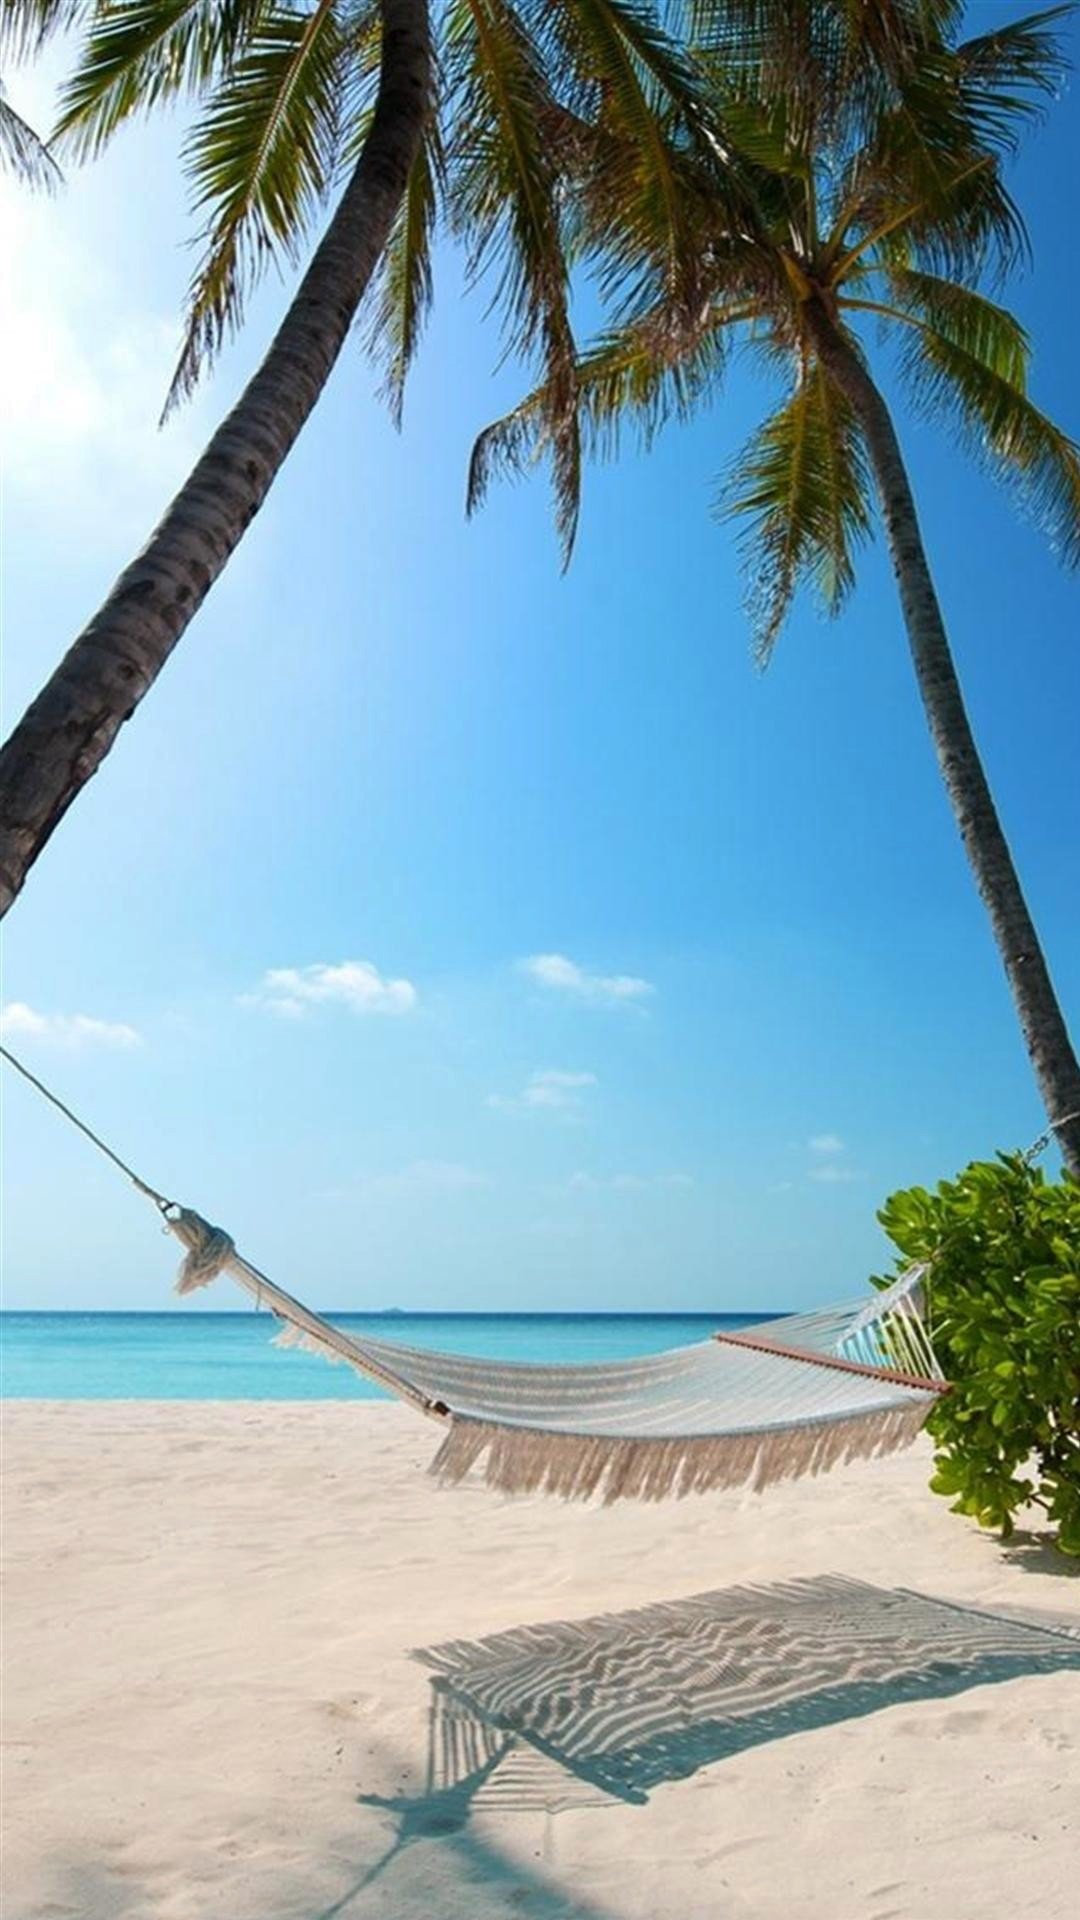 海边沙滩椰子树下的吊床与清透蓝天相遇